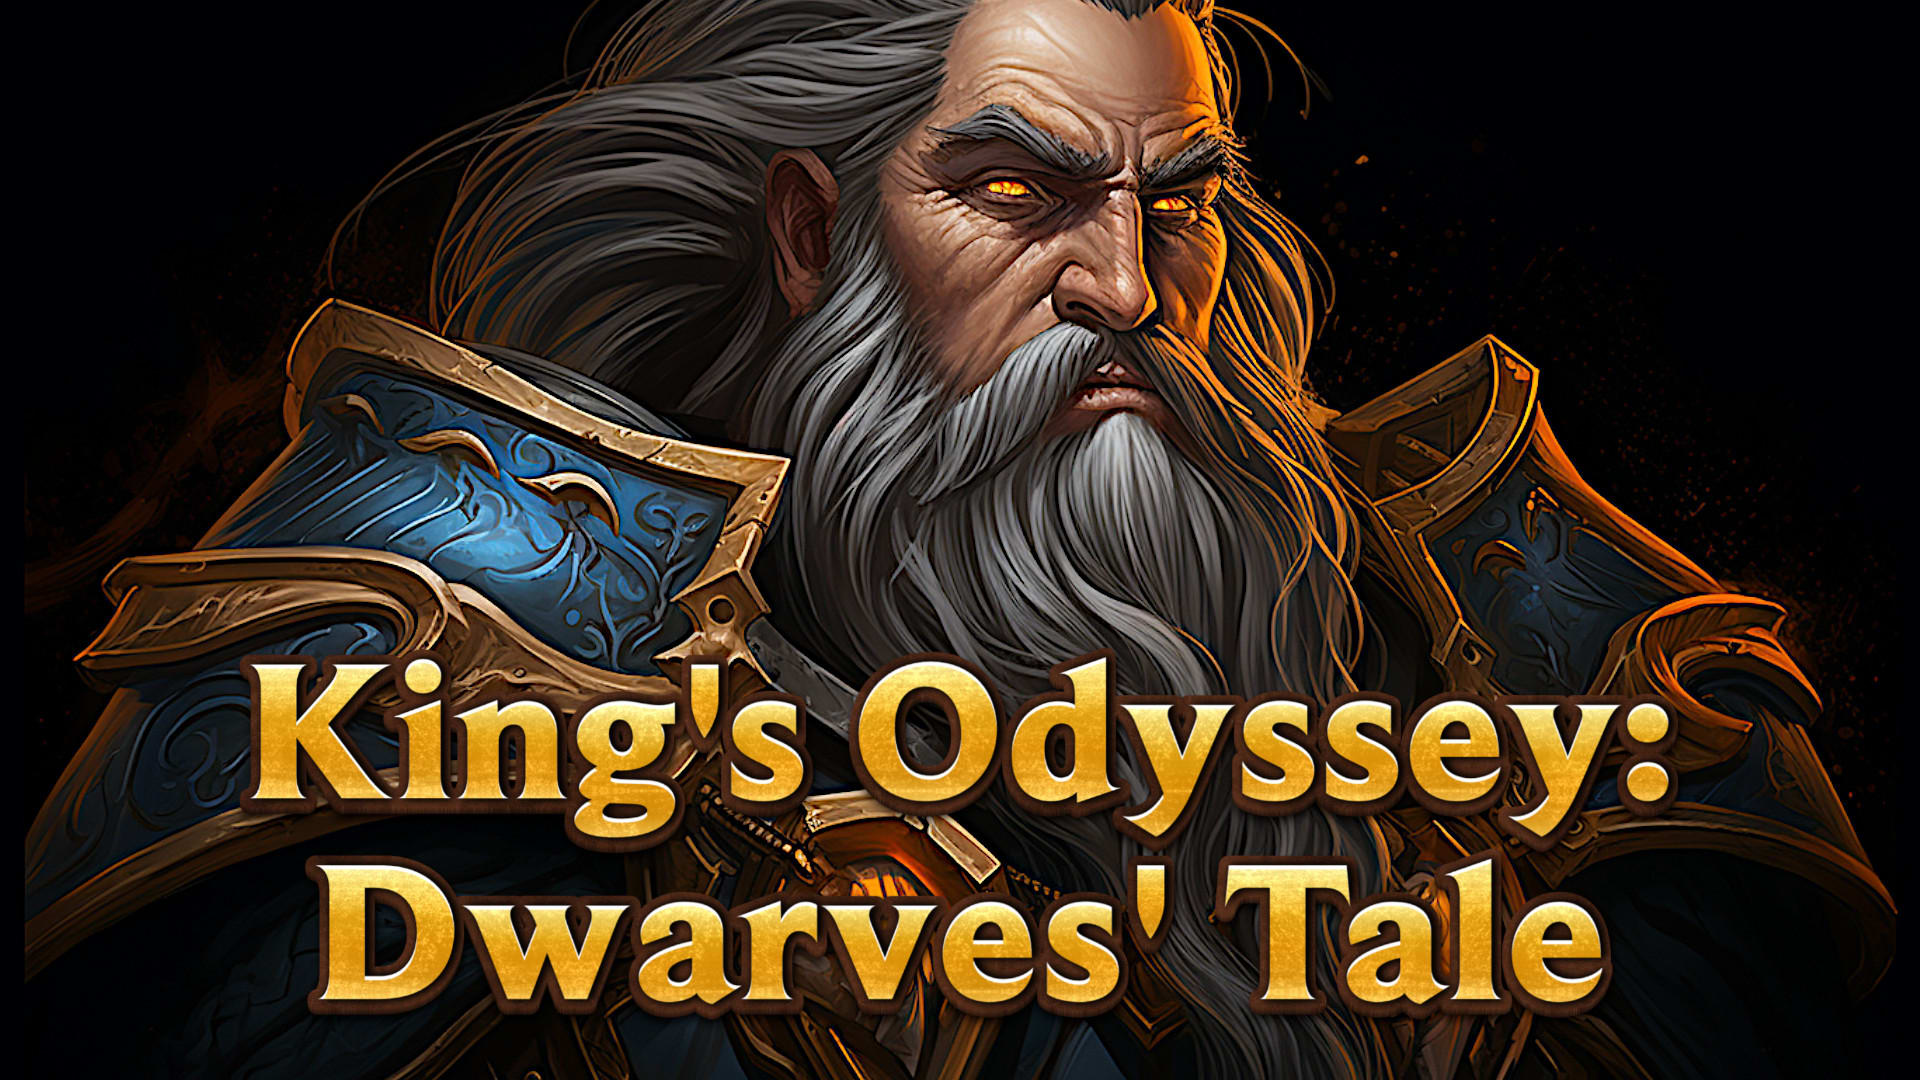 Kings Odyssey: Dwarves Tale